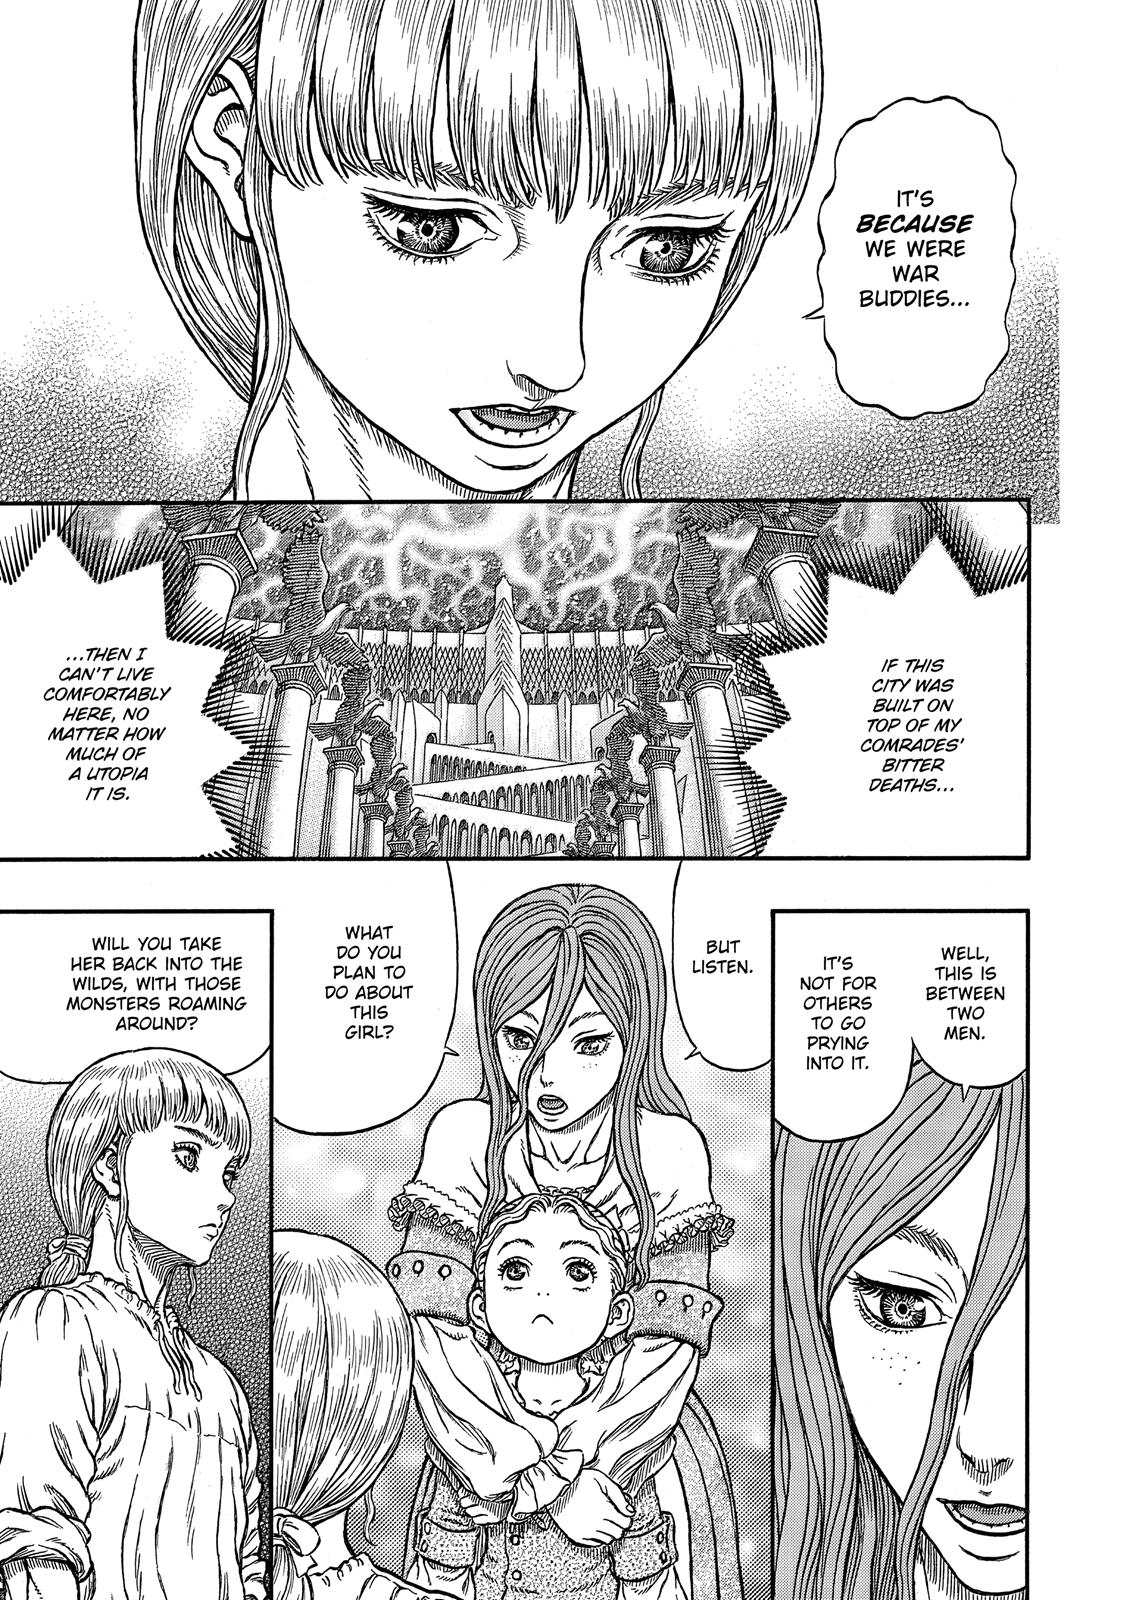 Berserk Manga Chapter 338 image 10